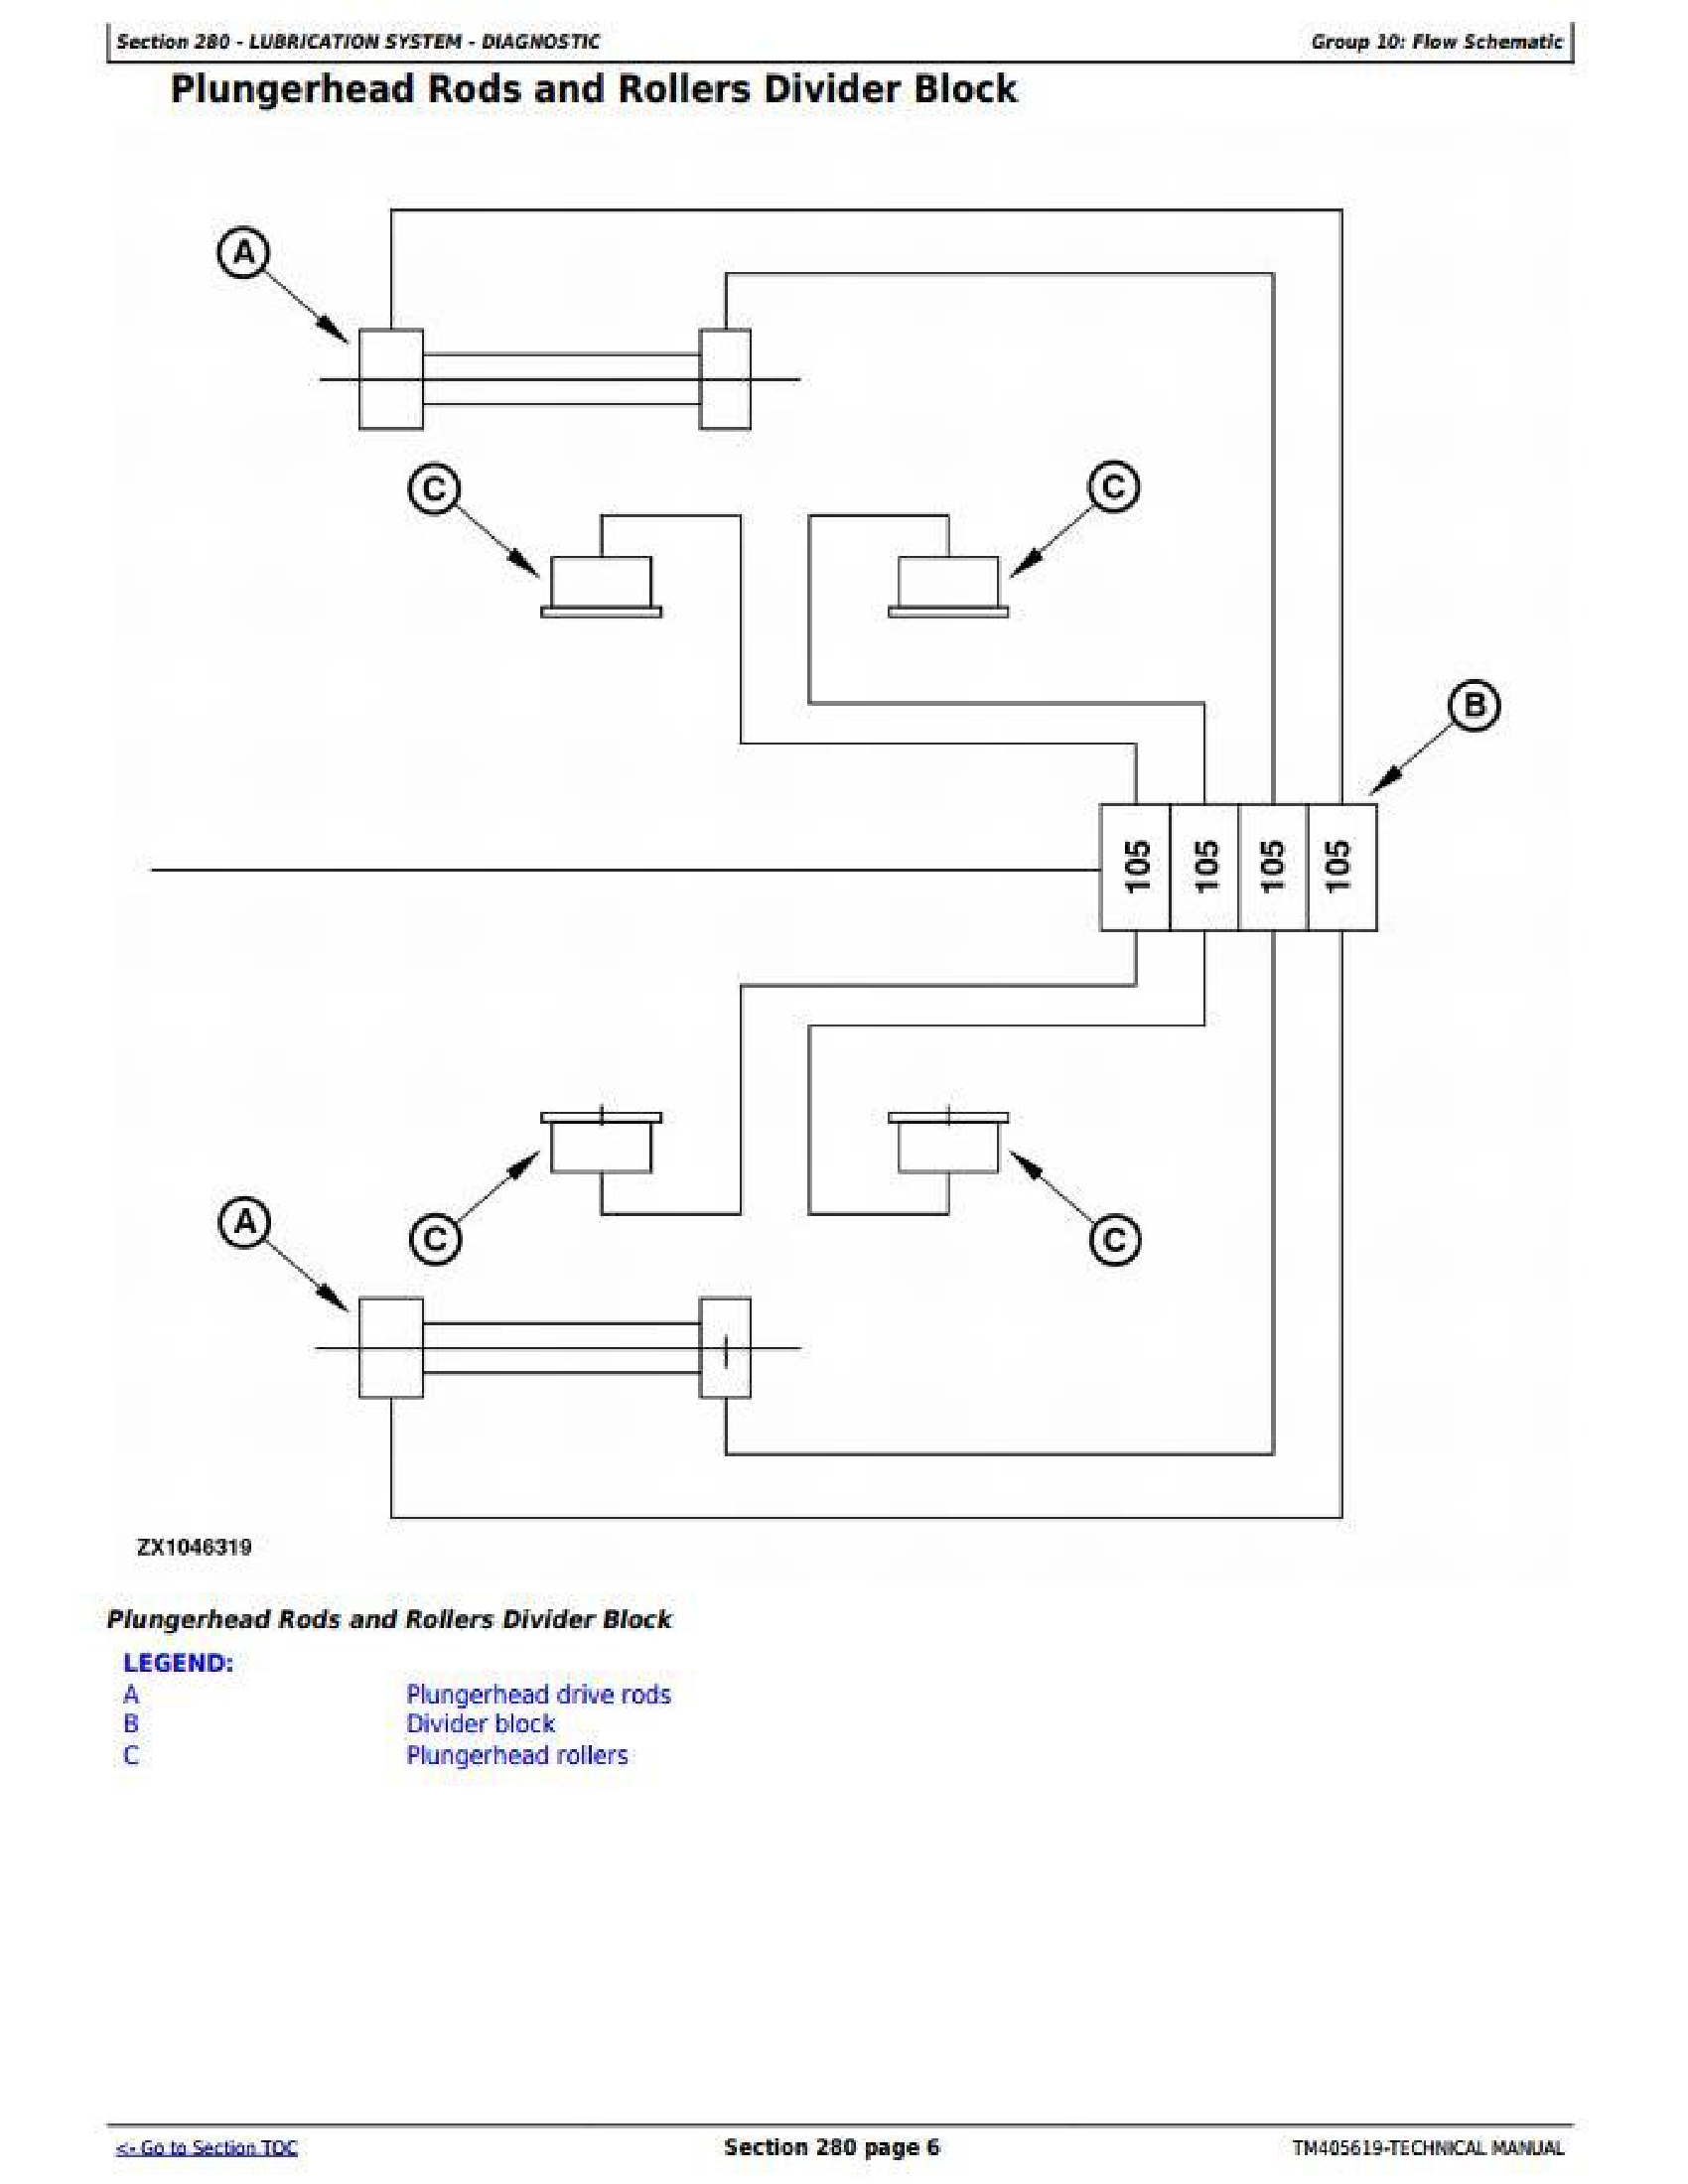 John Deere 1FF2656G manual pdf